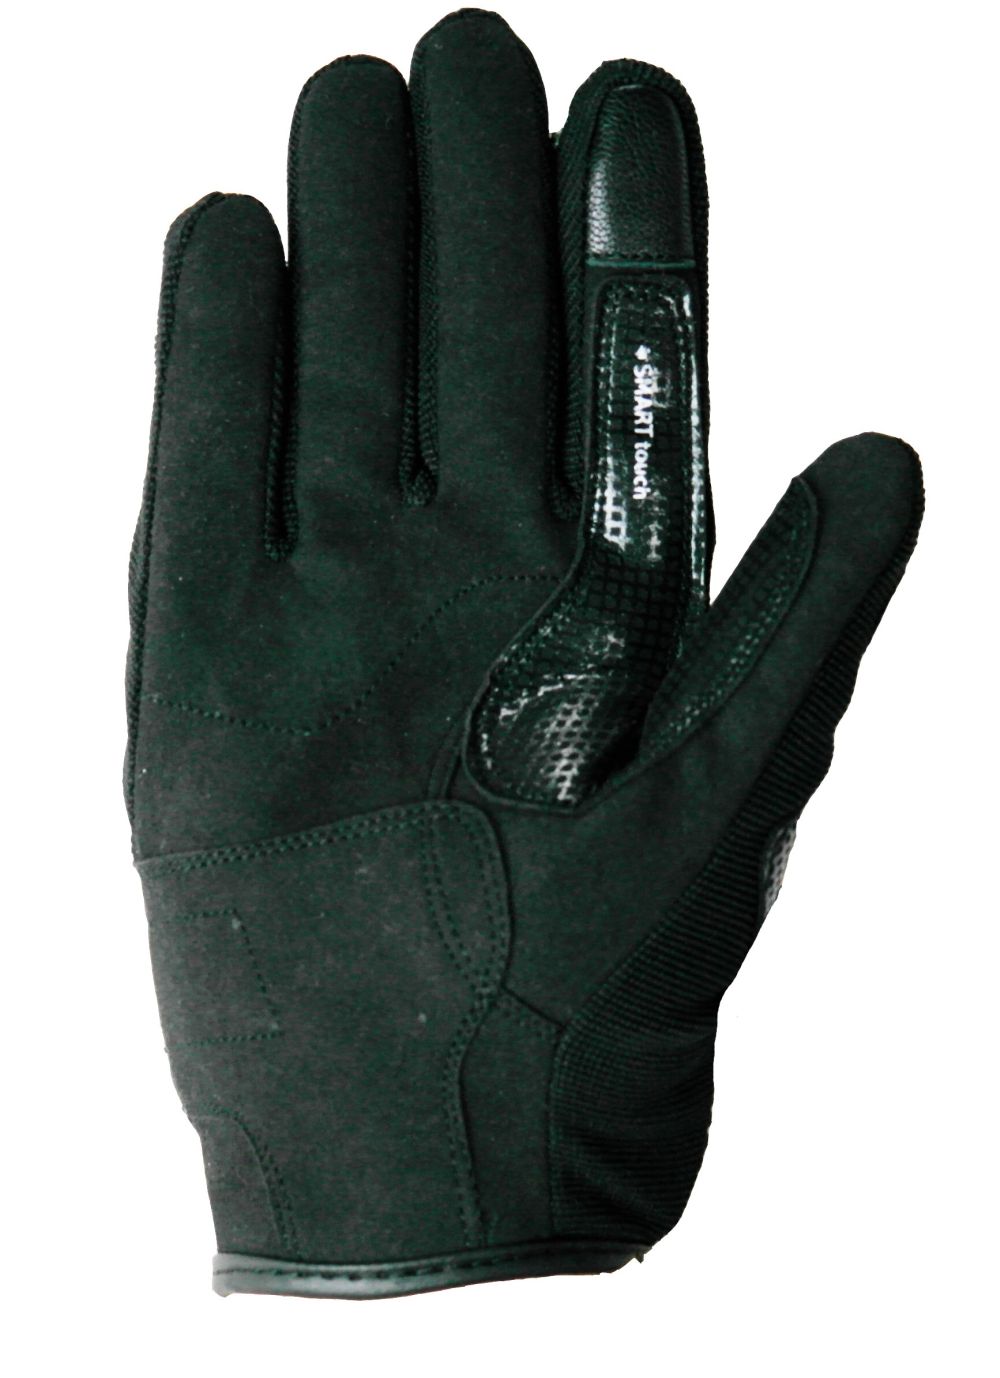 HEYBERRY Sommer Motorrad Handschuhe Textil kurz camouflage grün Gr M